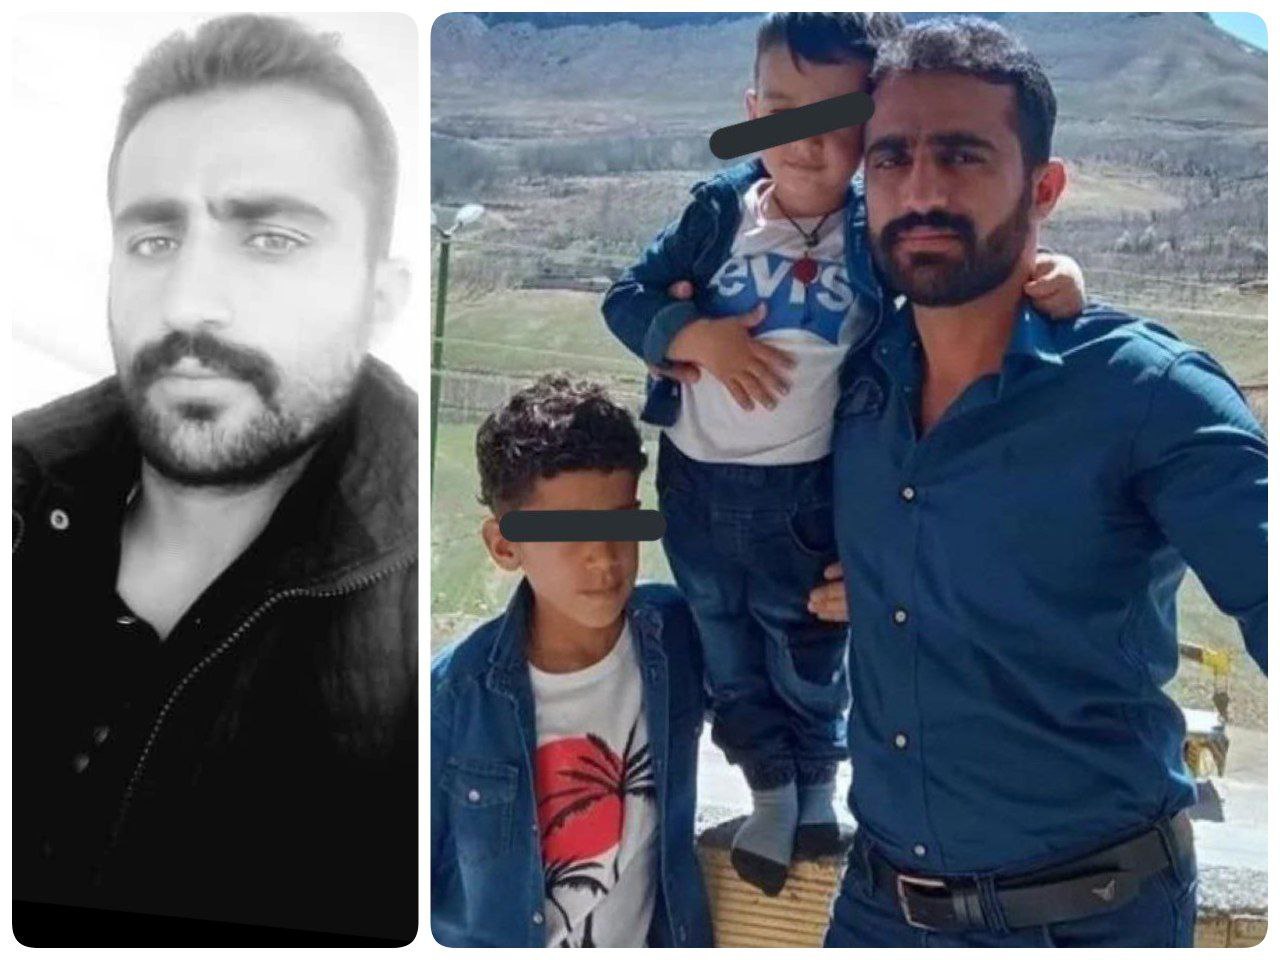 بهروز اسلامی، پدر دو کودک، شب گذشته درپی اعتراضات در باباحیدر به دست ماموران کشته شد.